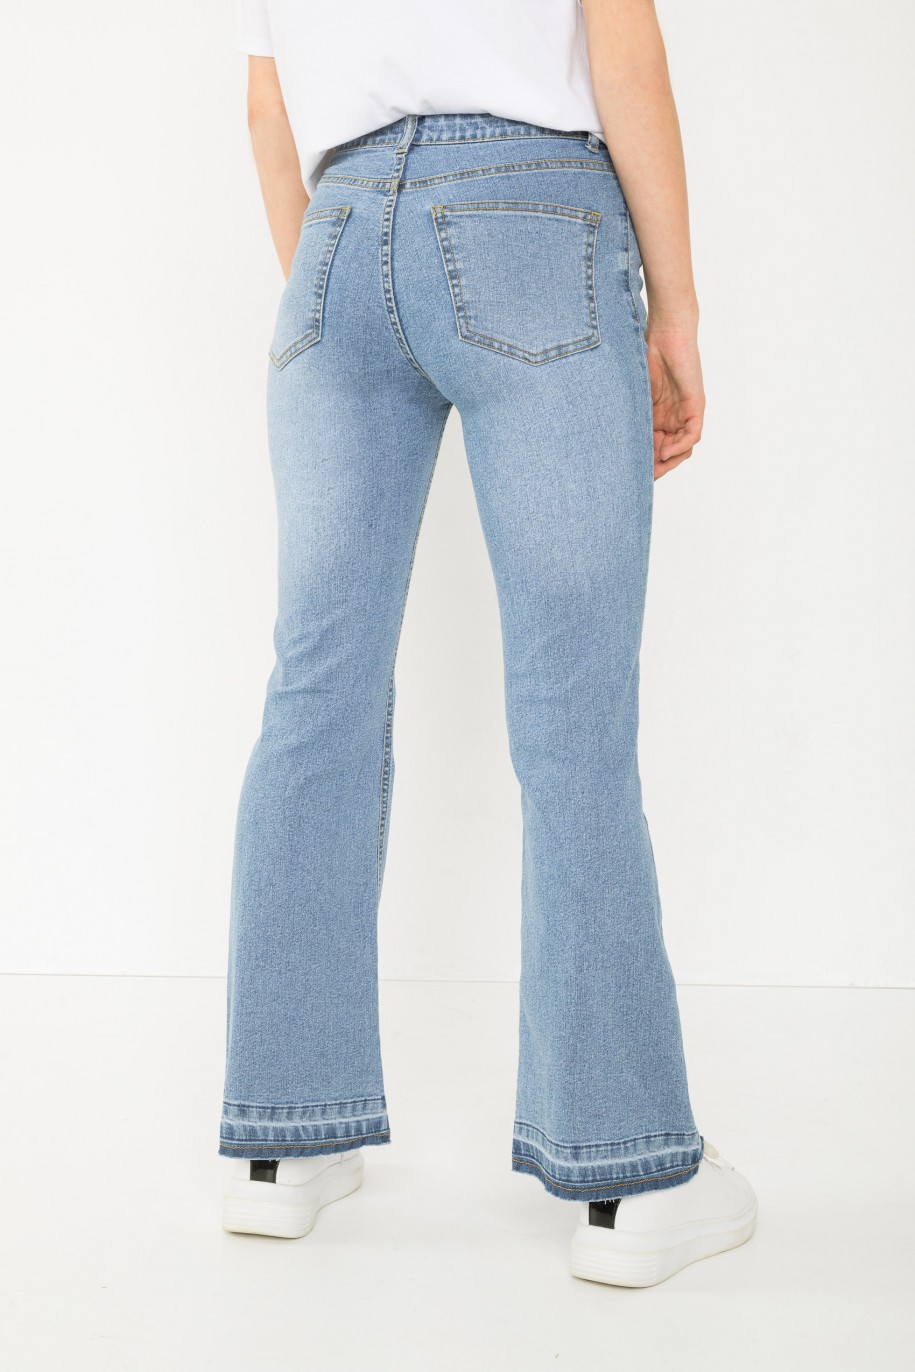 Niebieskie jeansowe spodnie typu dzwony - 43790